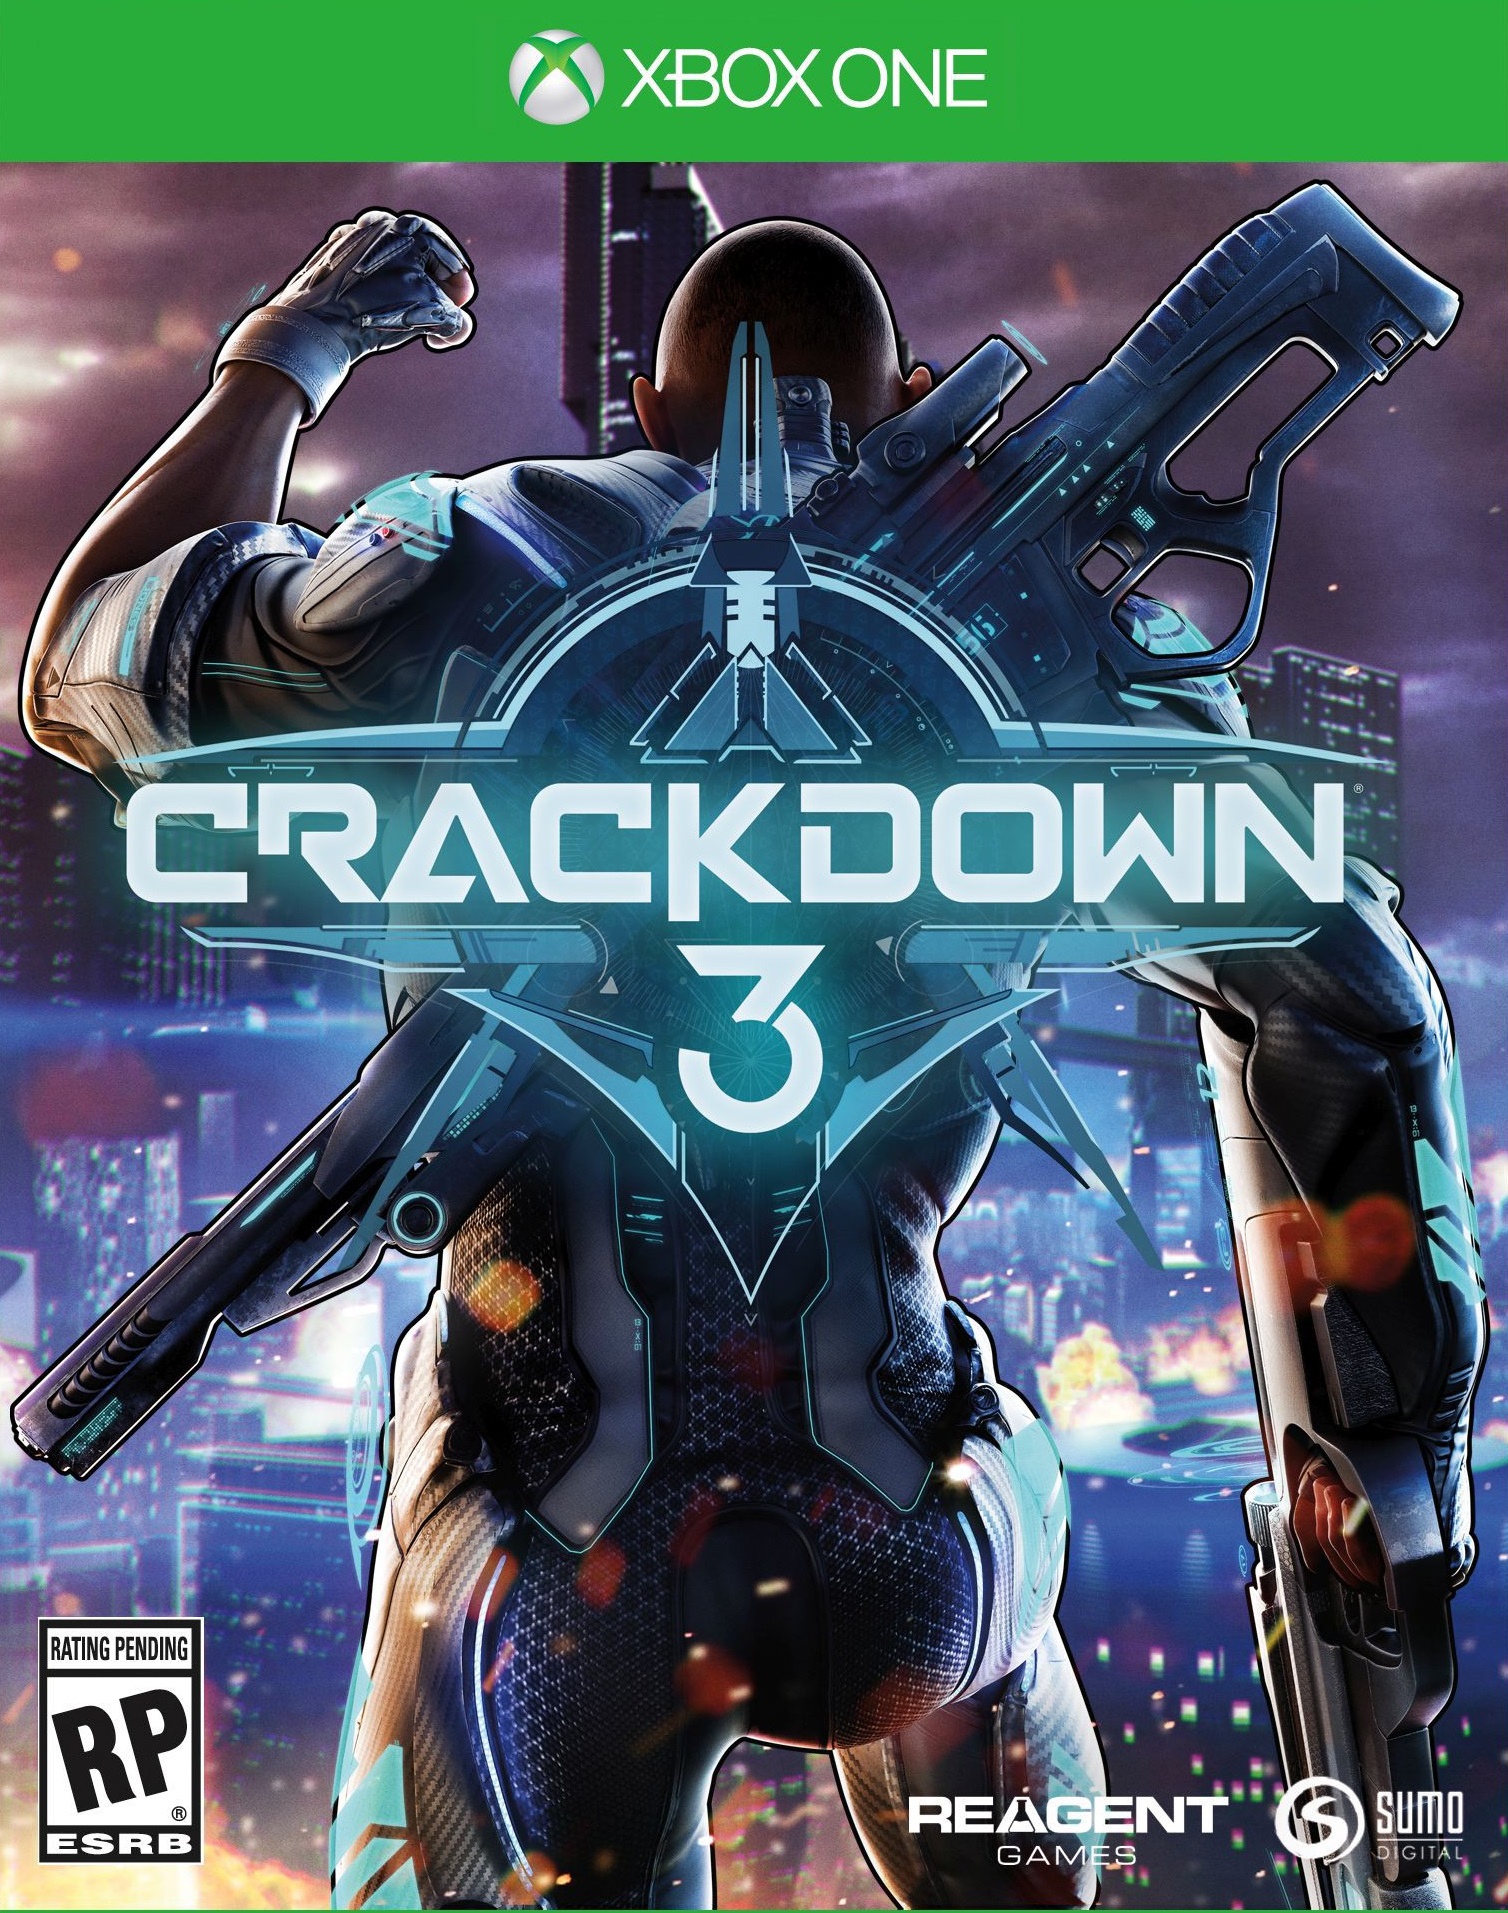 jaquette reduite de Crackdown 3 sur Xbox One